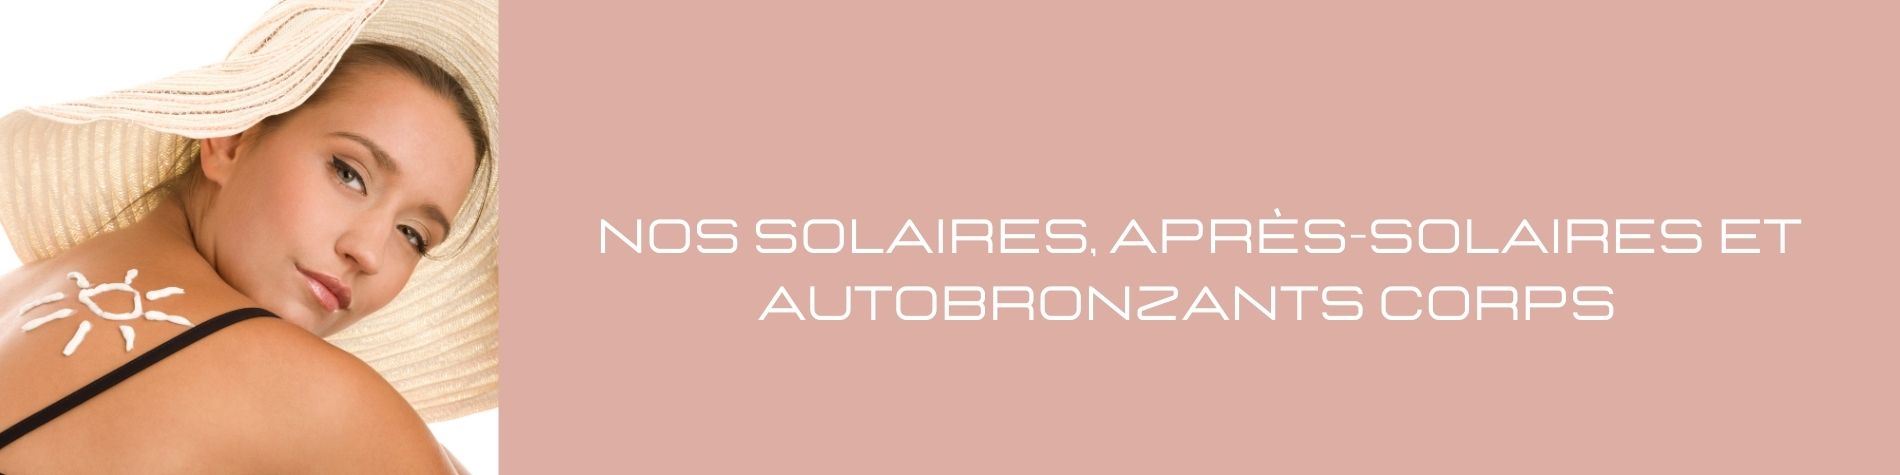 Solaires après-solaires et autobronzants